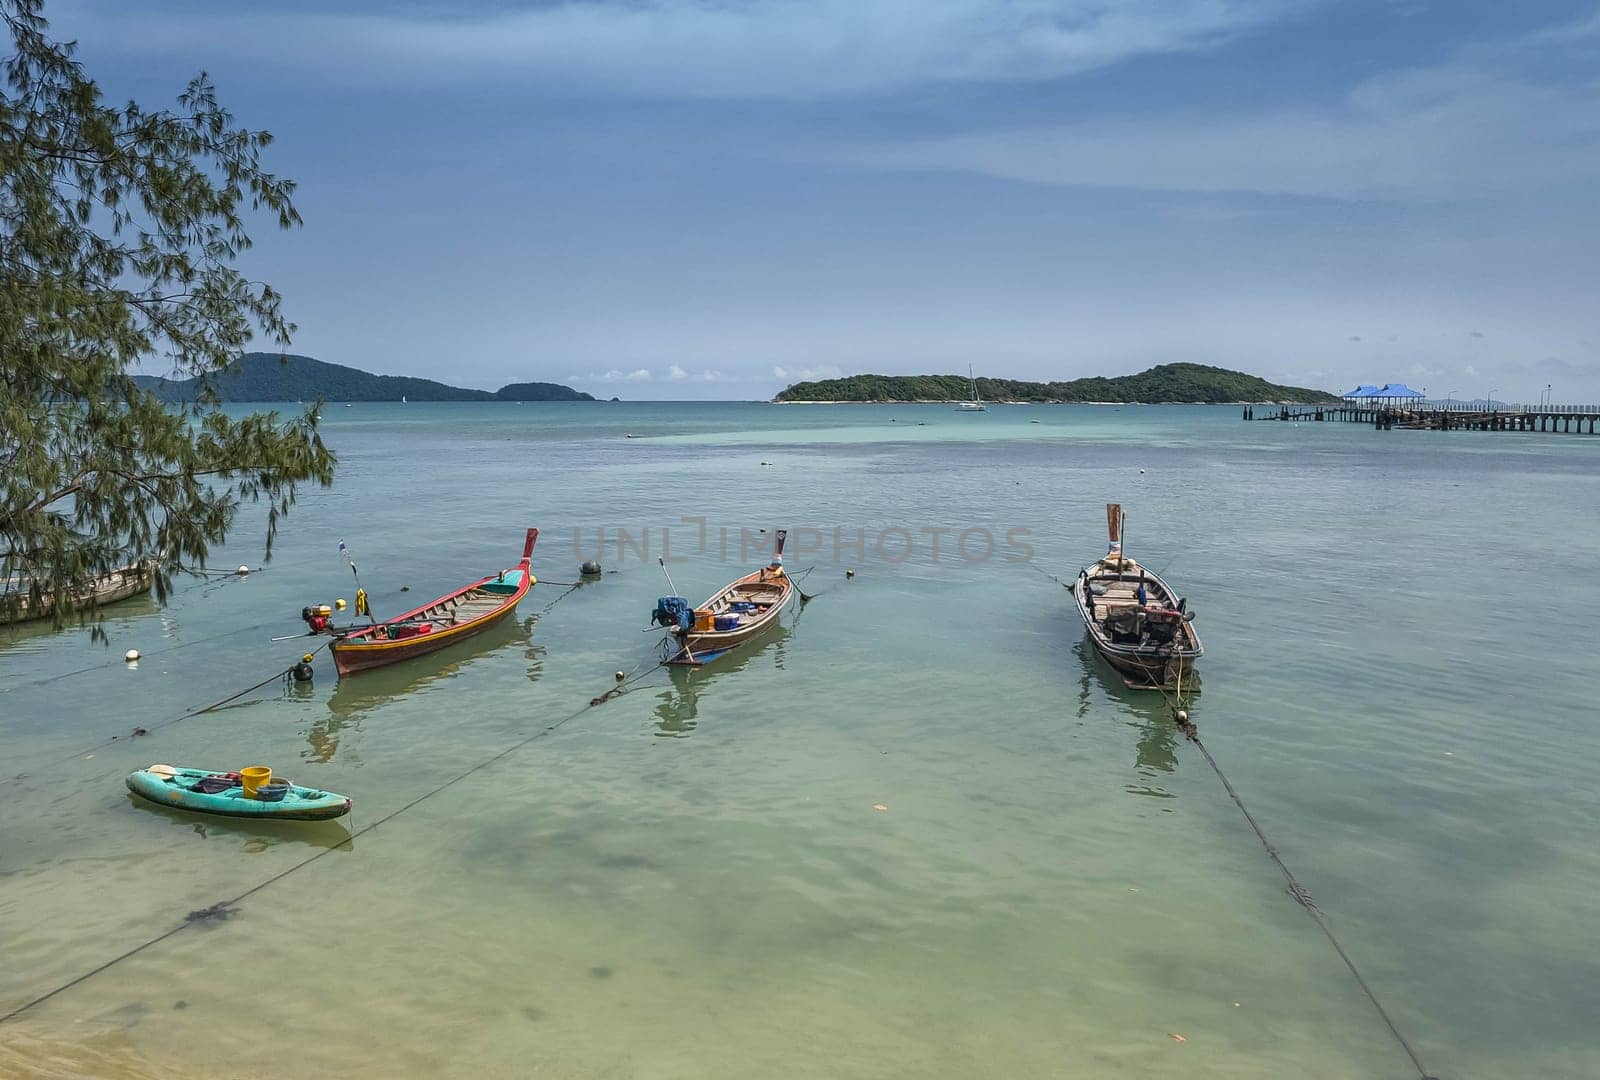 Fishing boats in Phuket, Thailand by Elenaphotos21